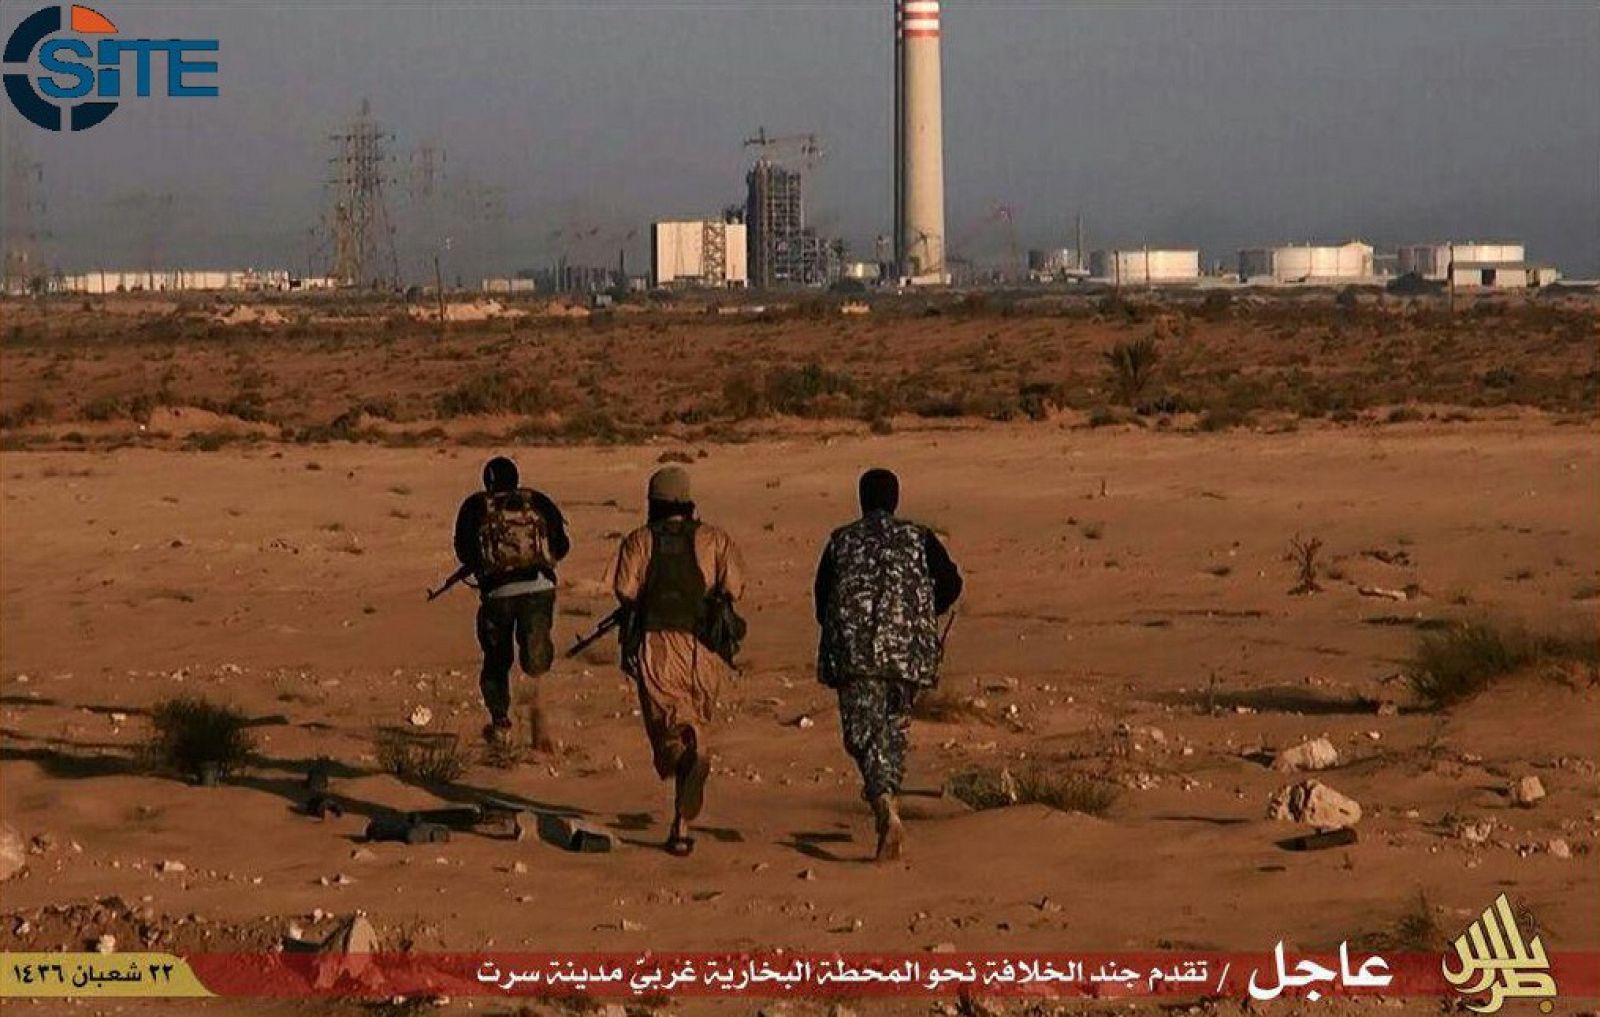 Imagen difundida por medios yihadistas en la que un grupo de milicianos del Estado Islámico corre hacia una central eléctrica en los alrededores de Sirte.